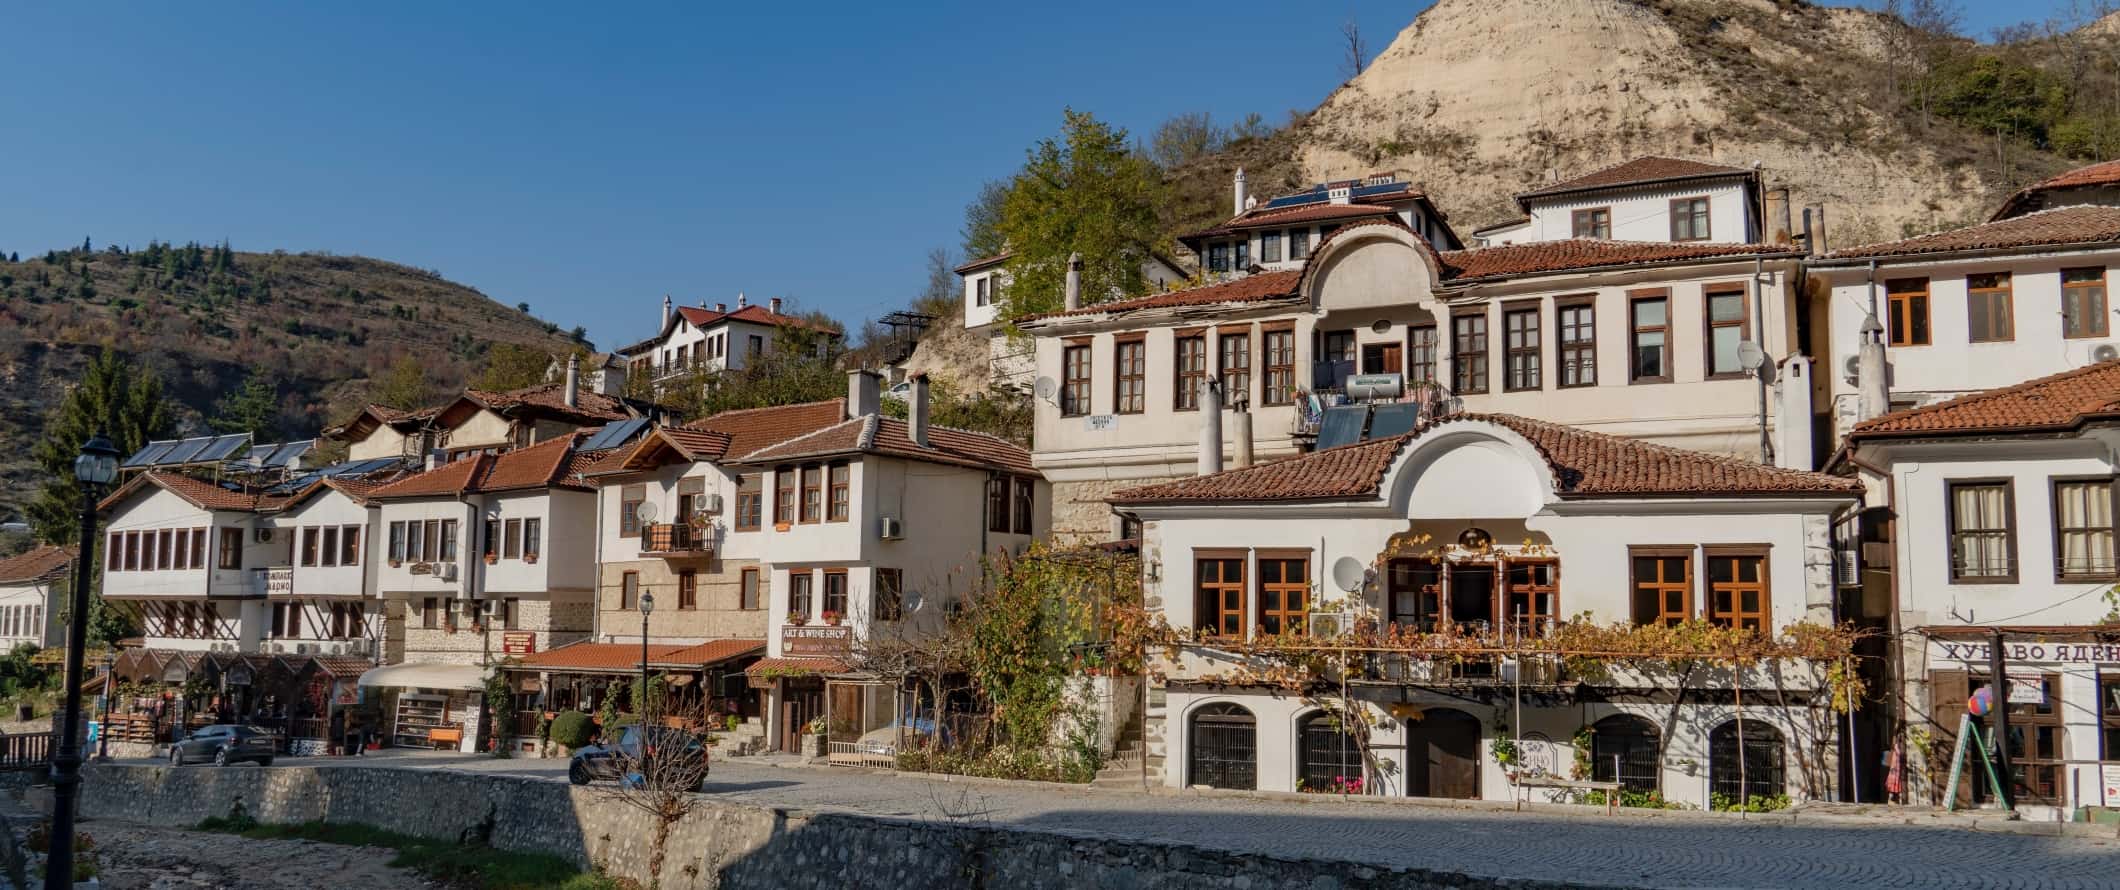 Casas tradicionais búlgaras com telhados de terracota ao longo de uma rua de paralelepípedos numa pequena aldeia